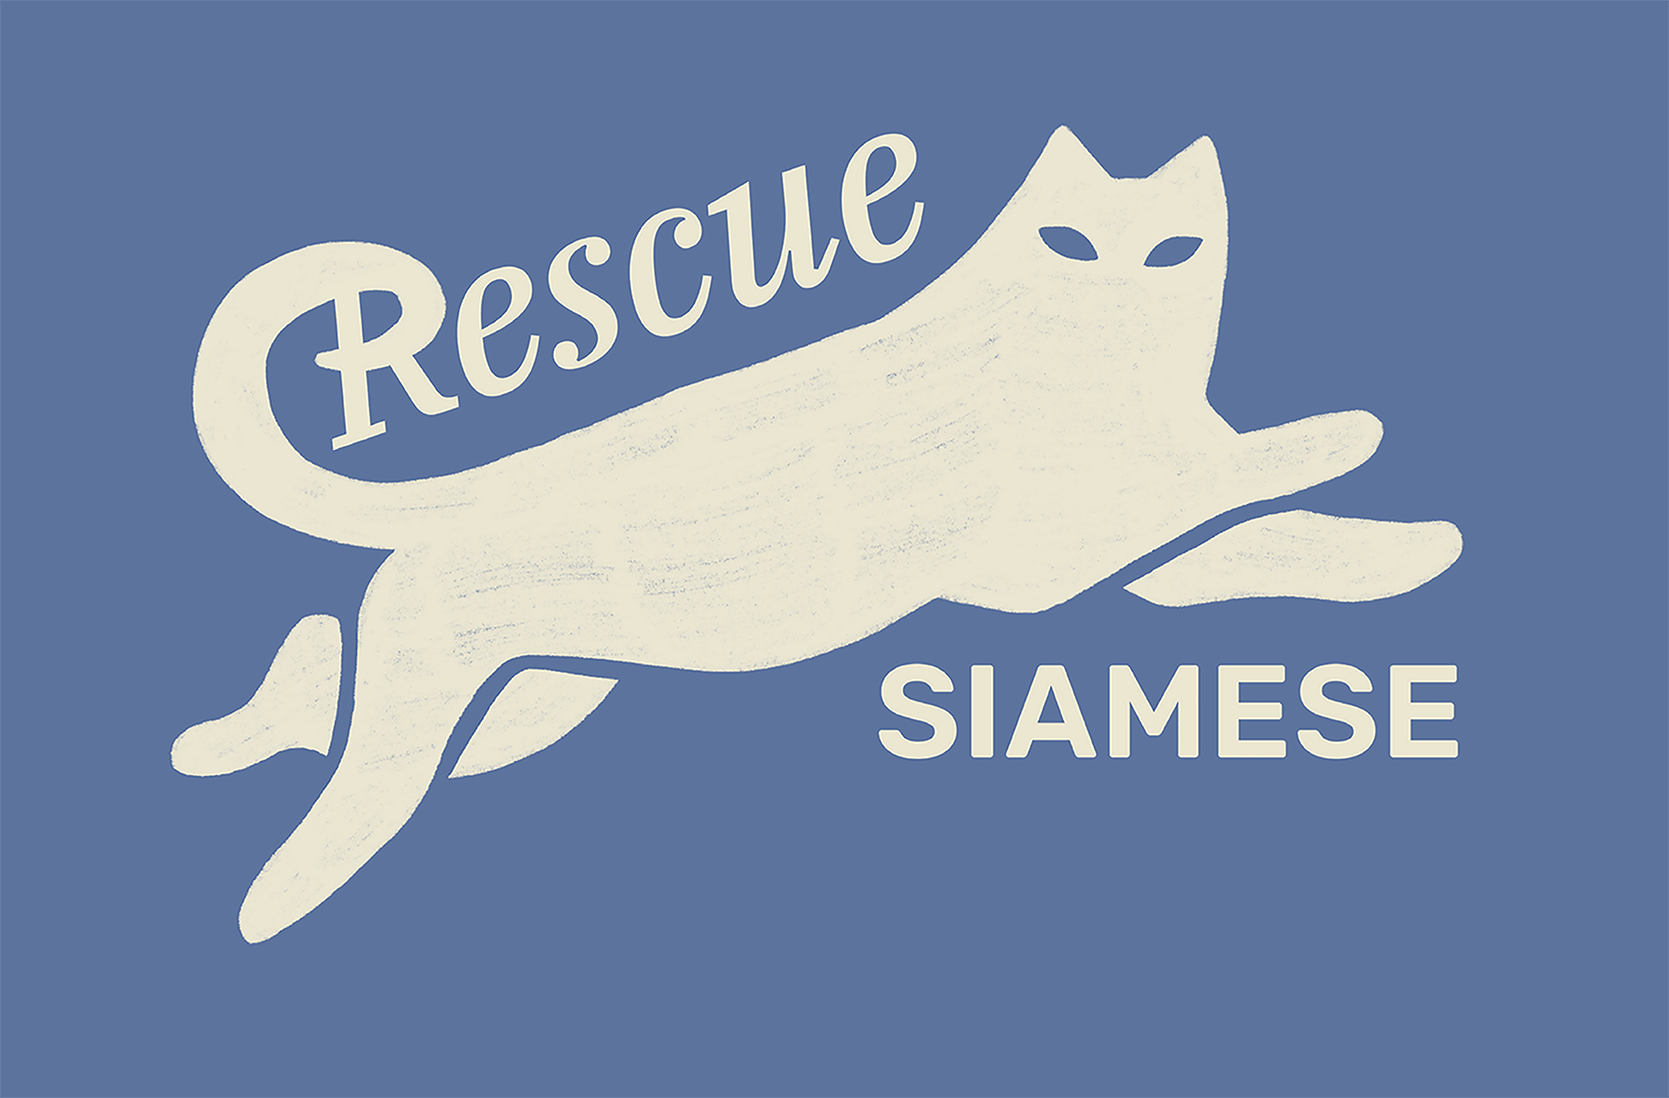 The dark version of the Rescue Siamese logo